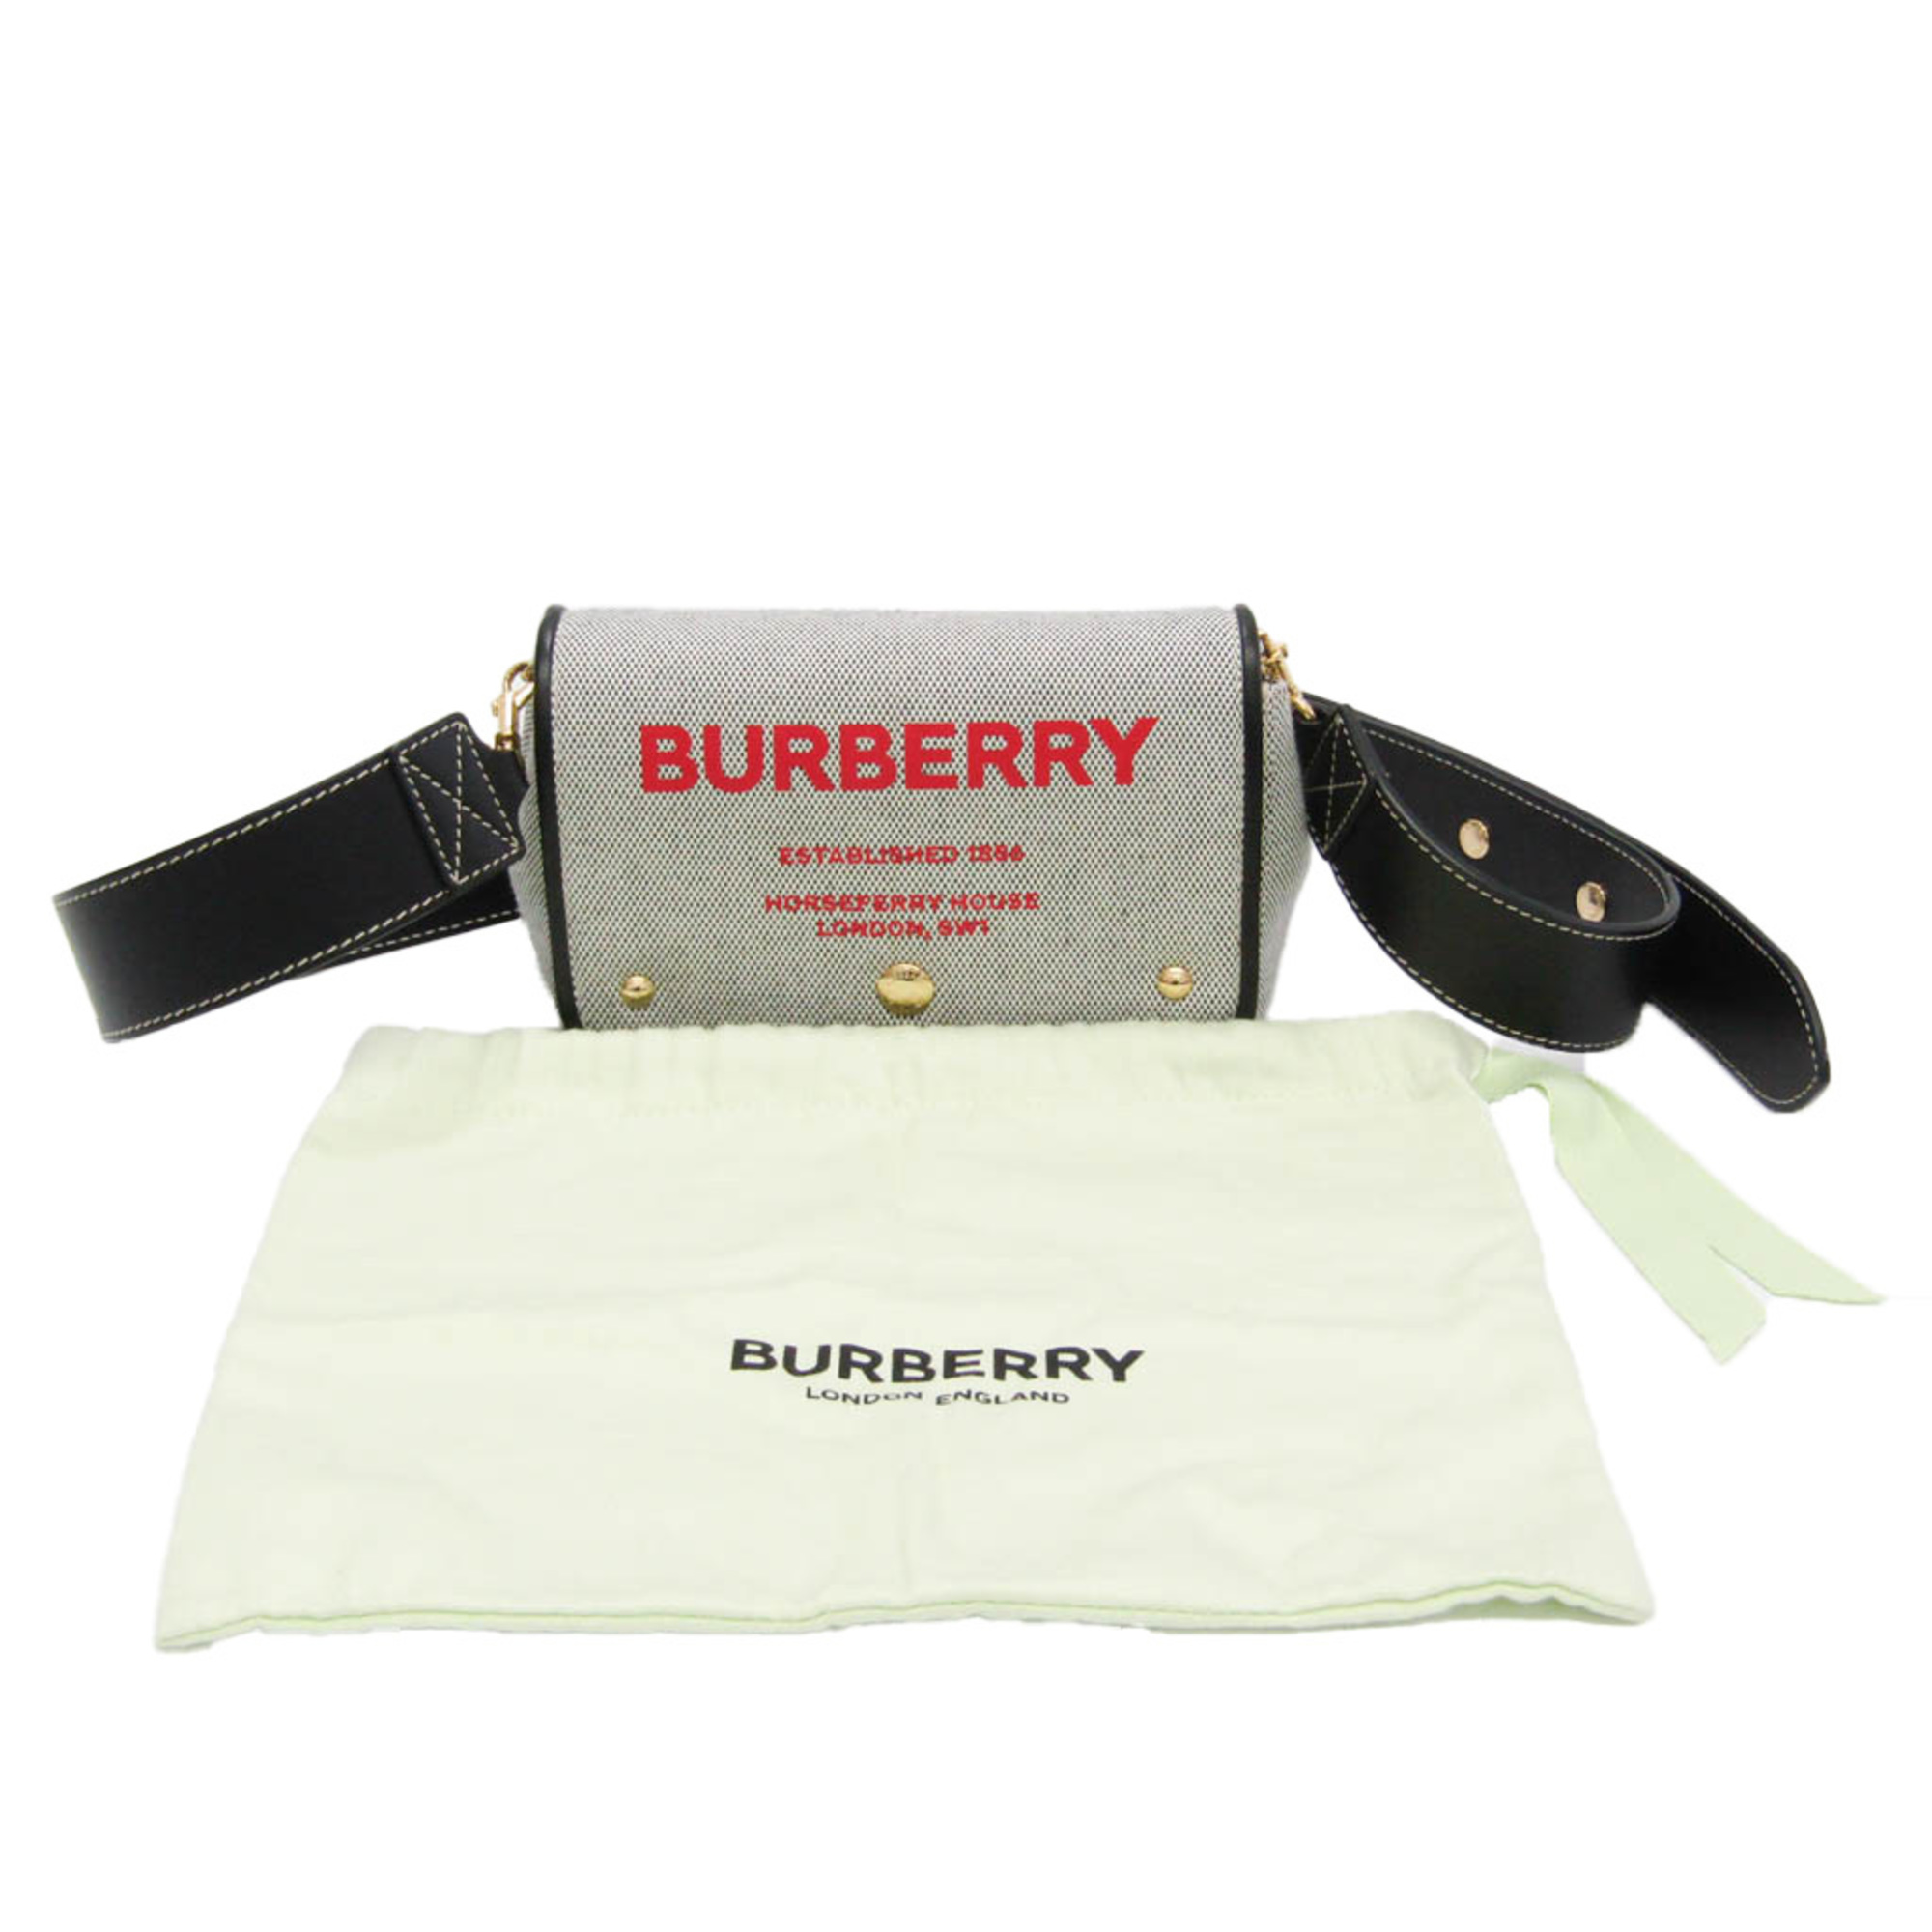 Burberry 8039869 Women,Men Canvas,Leather Shoulder Bag Black,Red Color